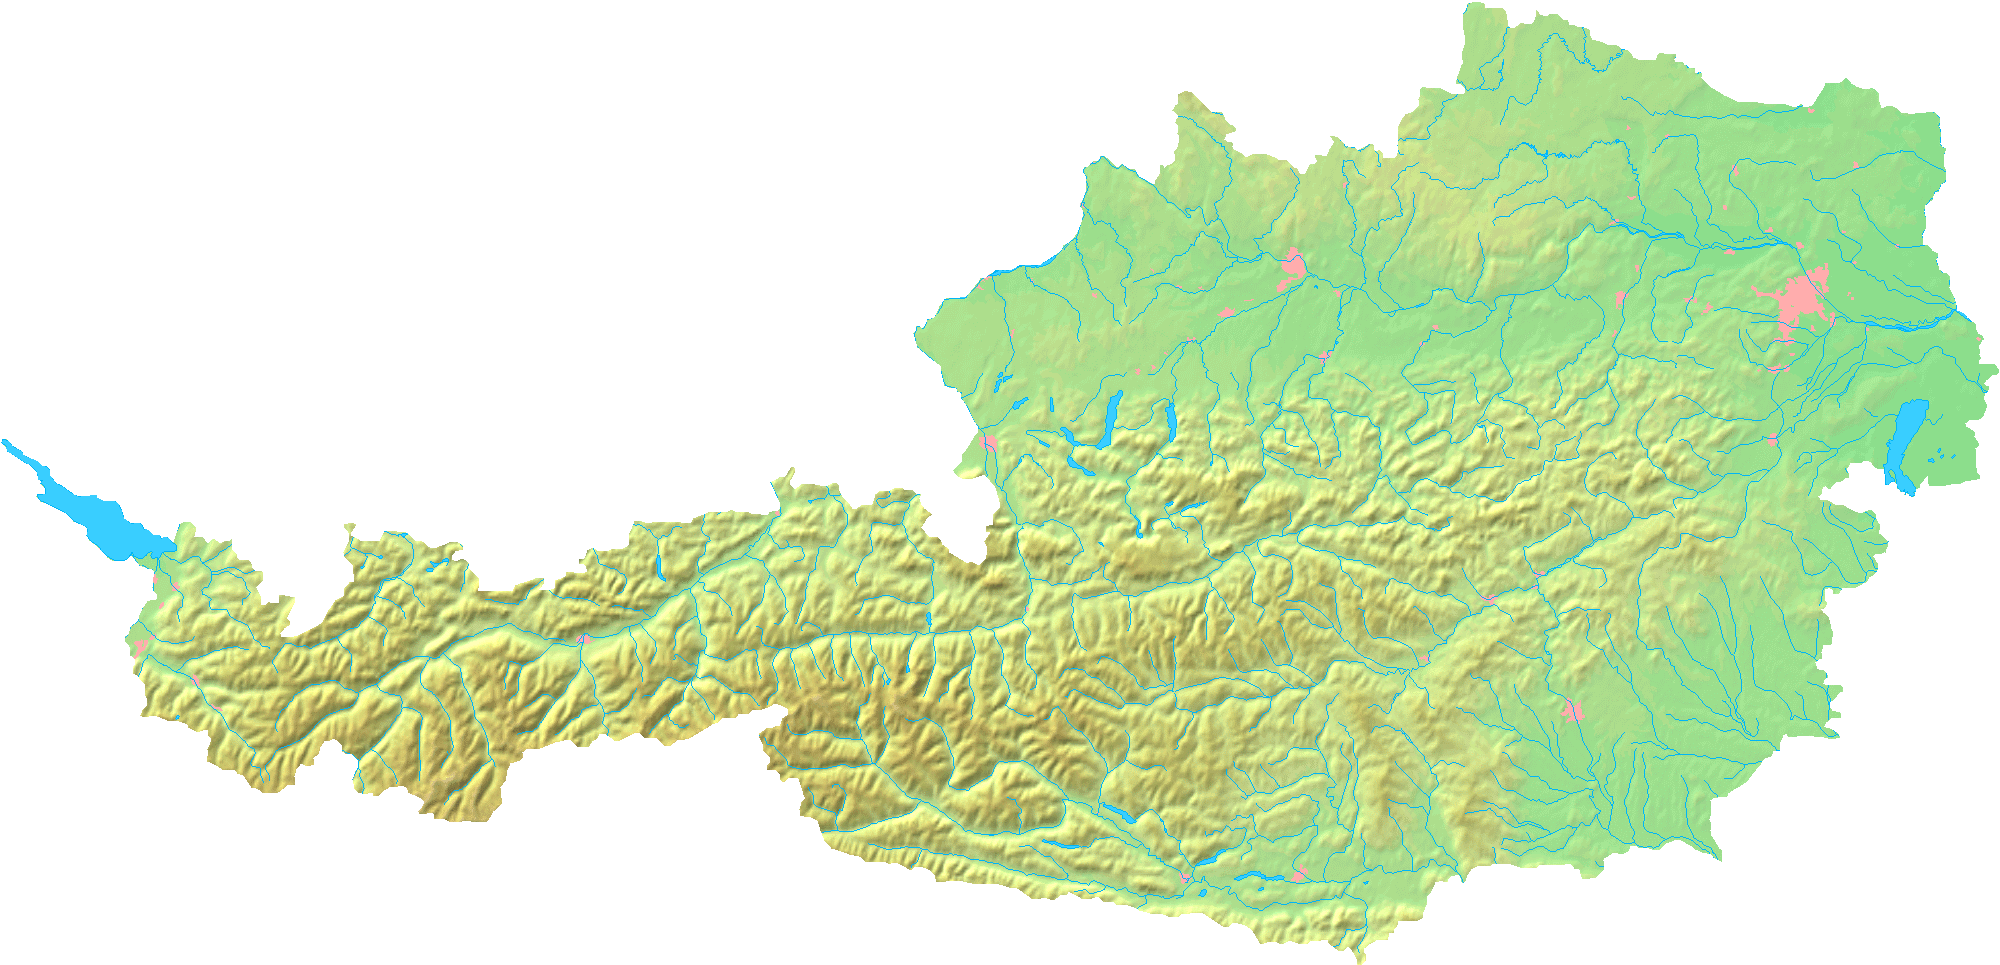 topographisch karte von osterreich 2008